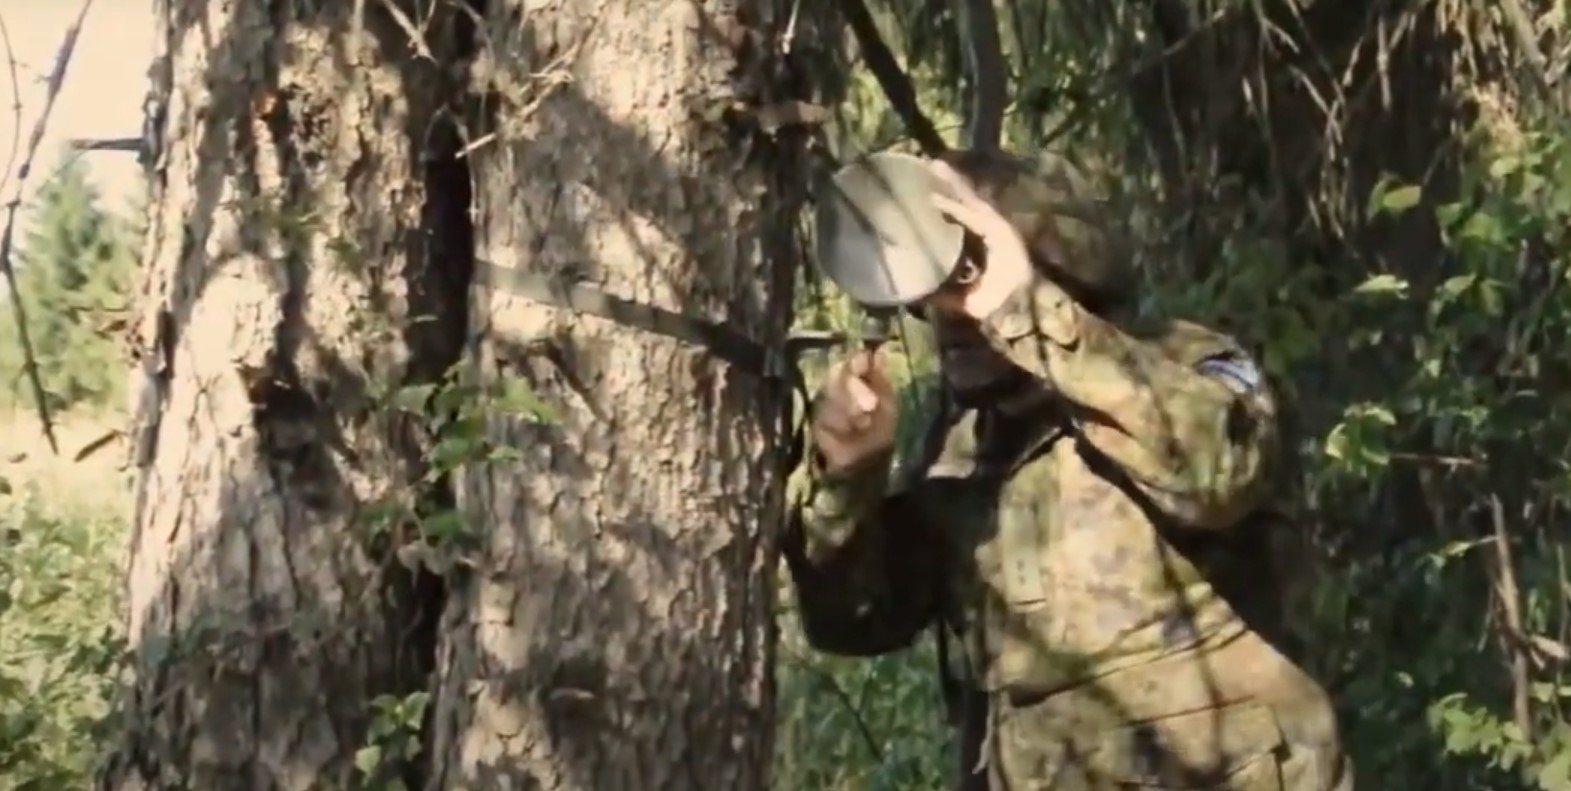 Встановлення міни PK-14 на дереві. Кадр з відео естонської армії